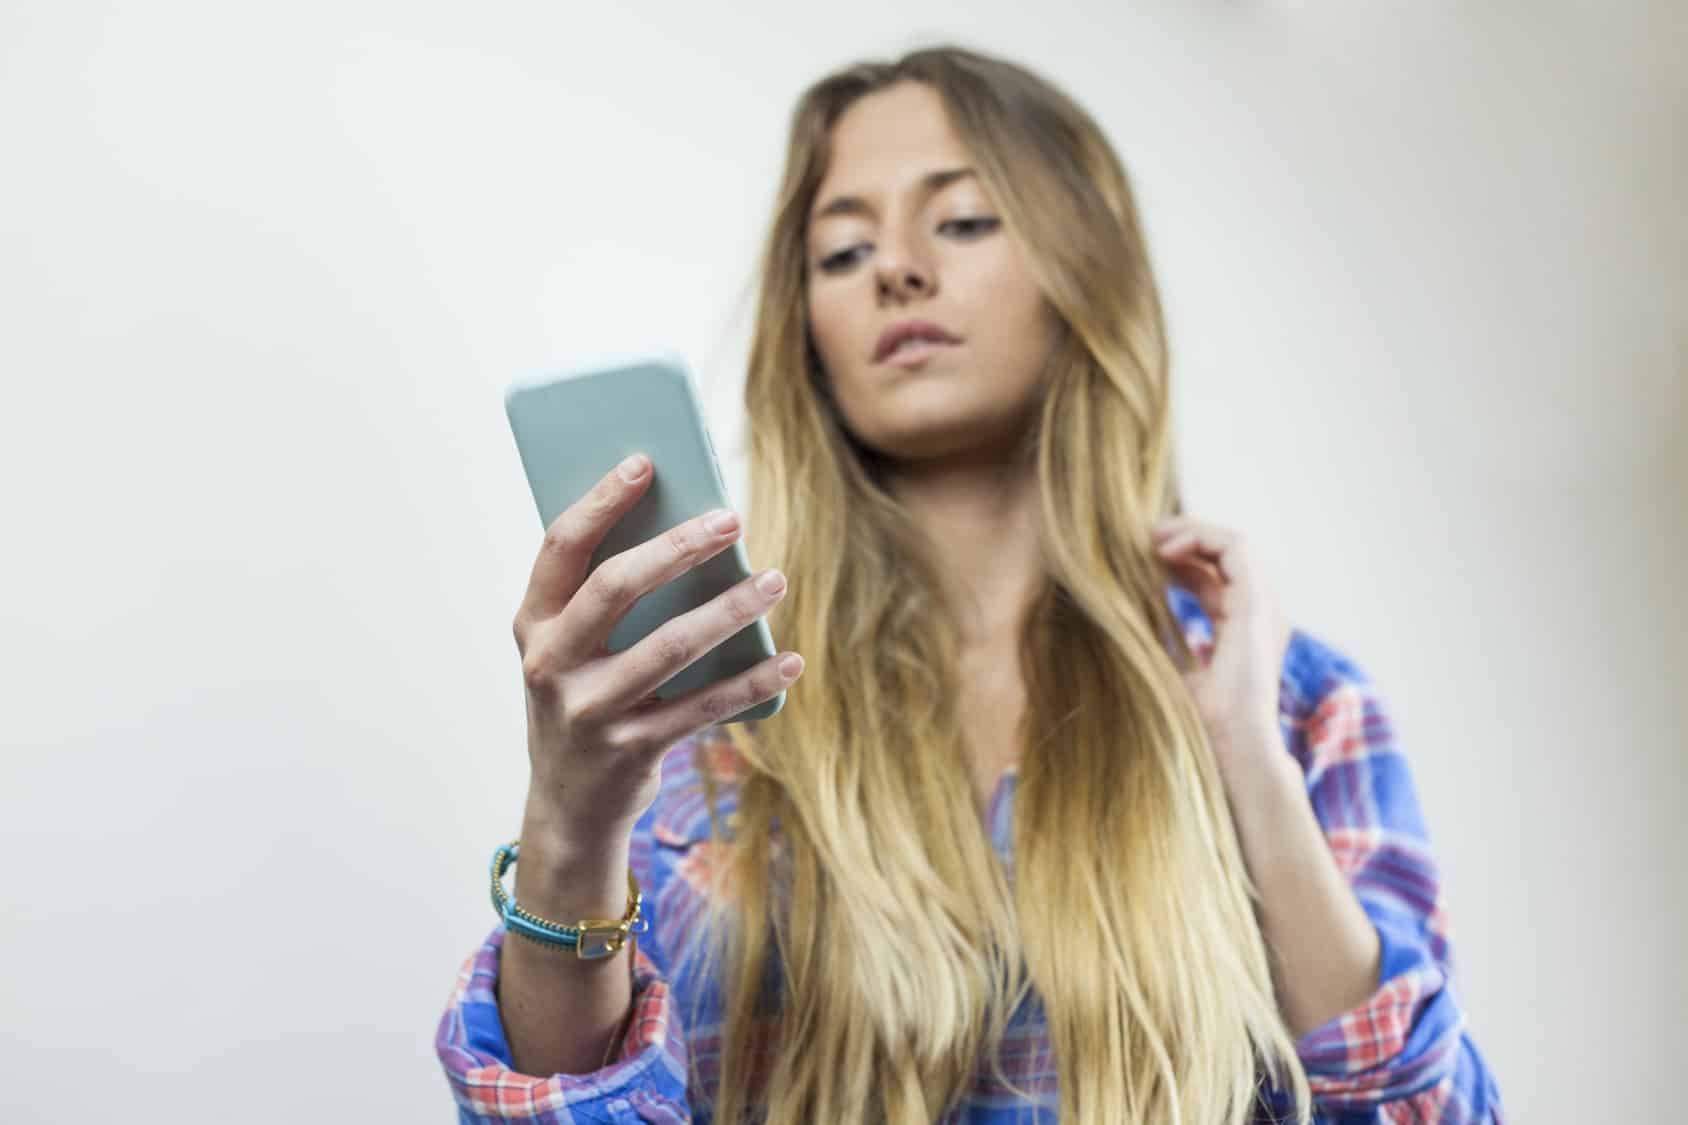 WhatsAppitis, o cuello de texto y pulgar atascado, son los nuevos males que surgen del uso excesivo de dispositivos tecnológicos como tablets y celulares.